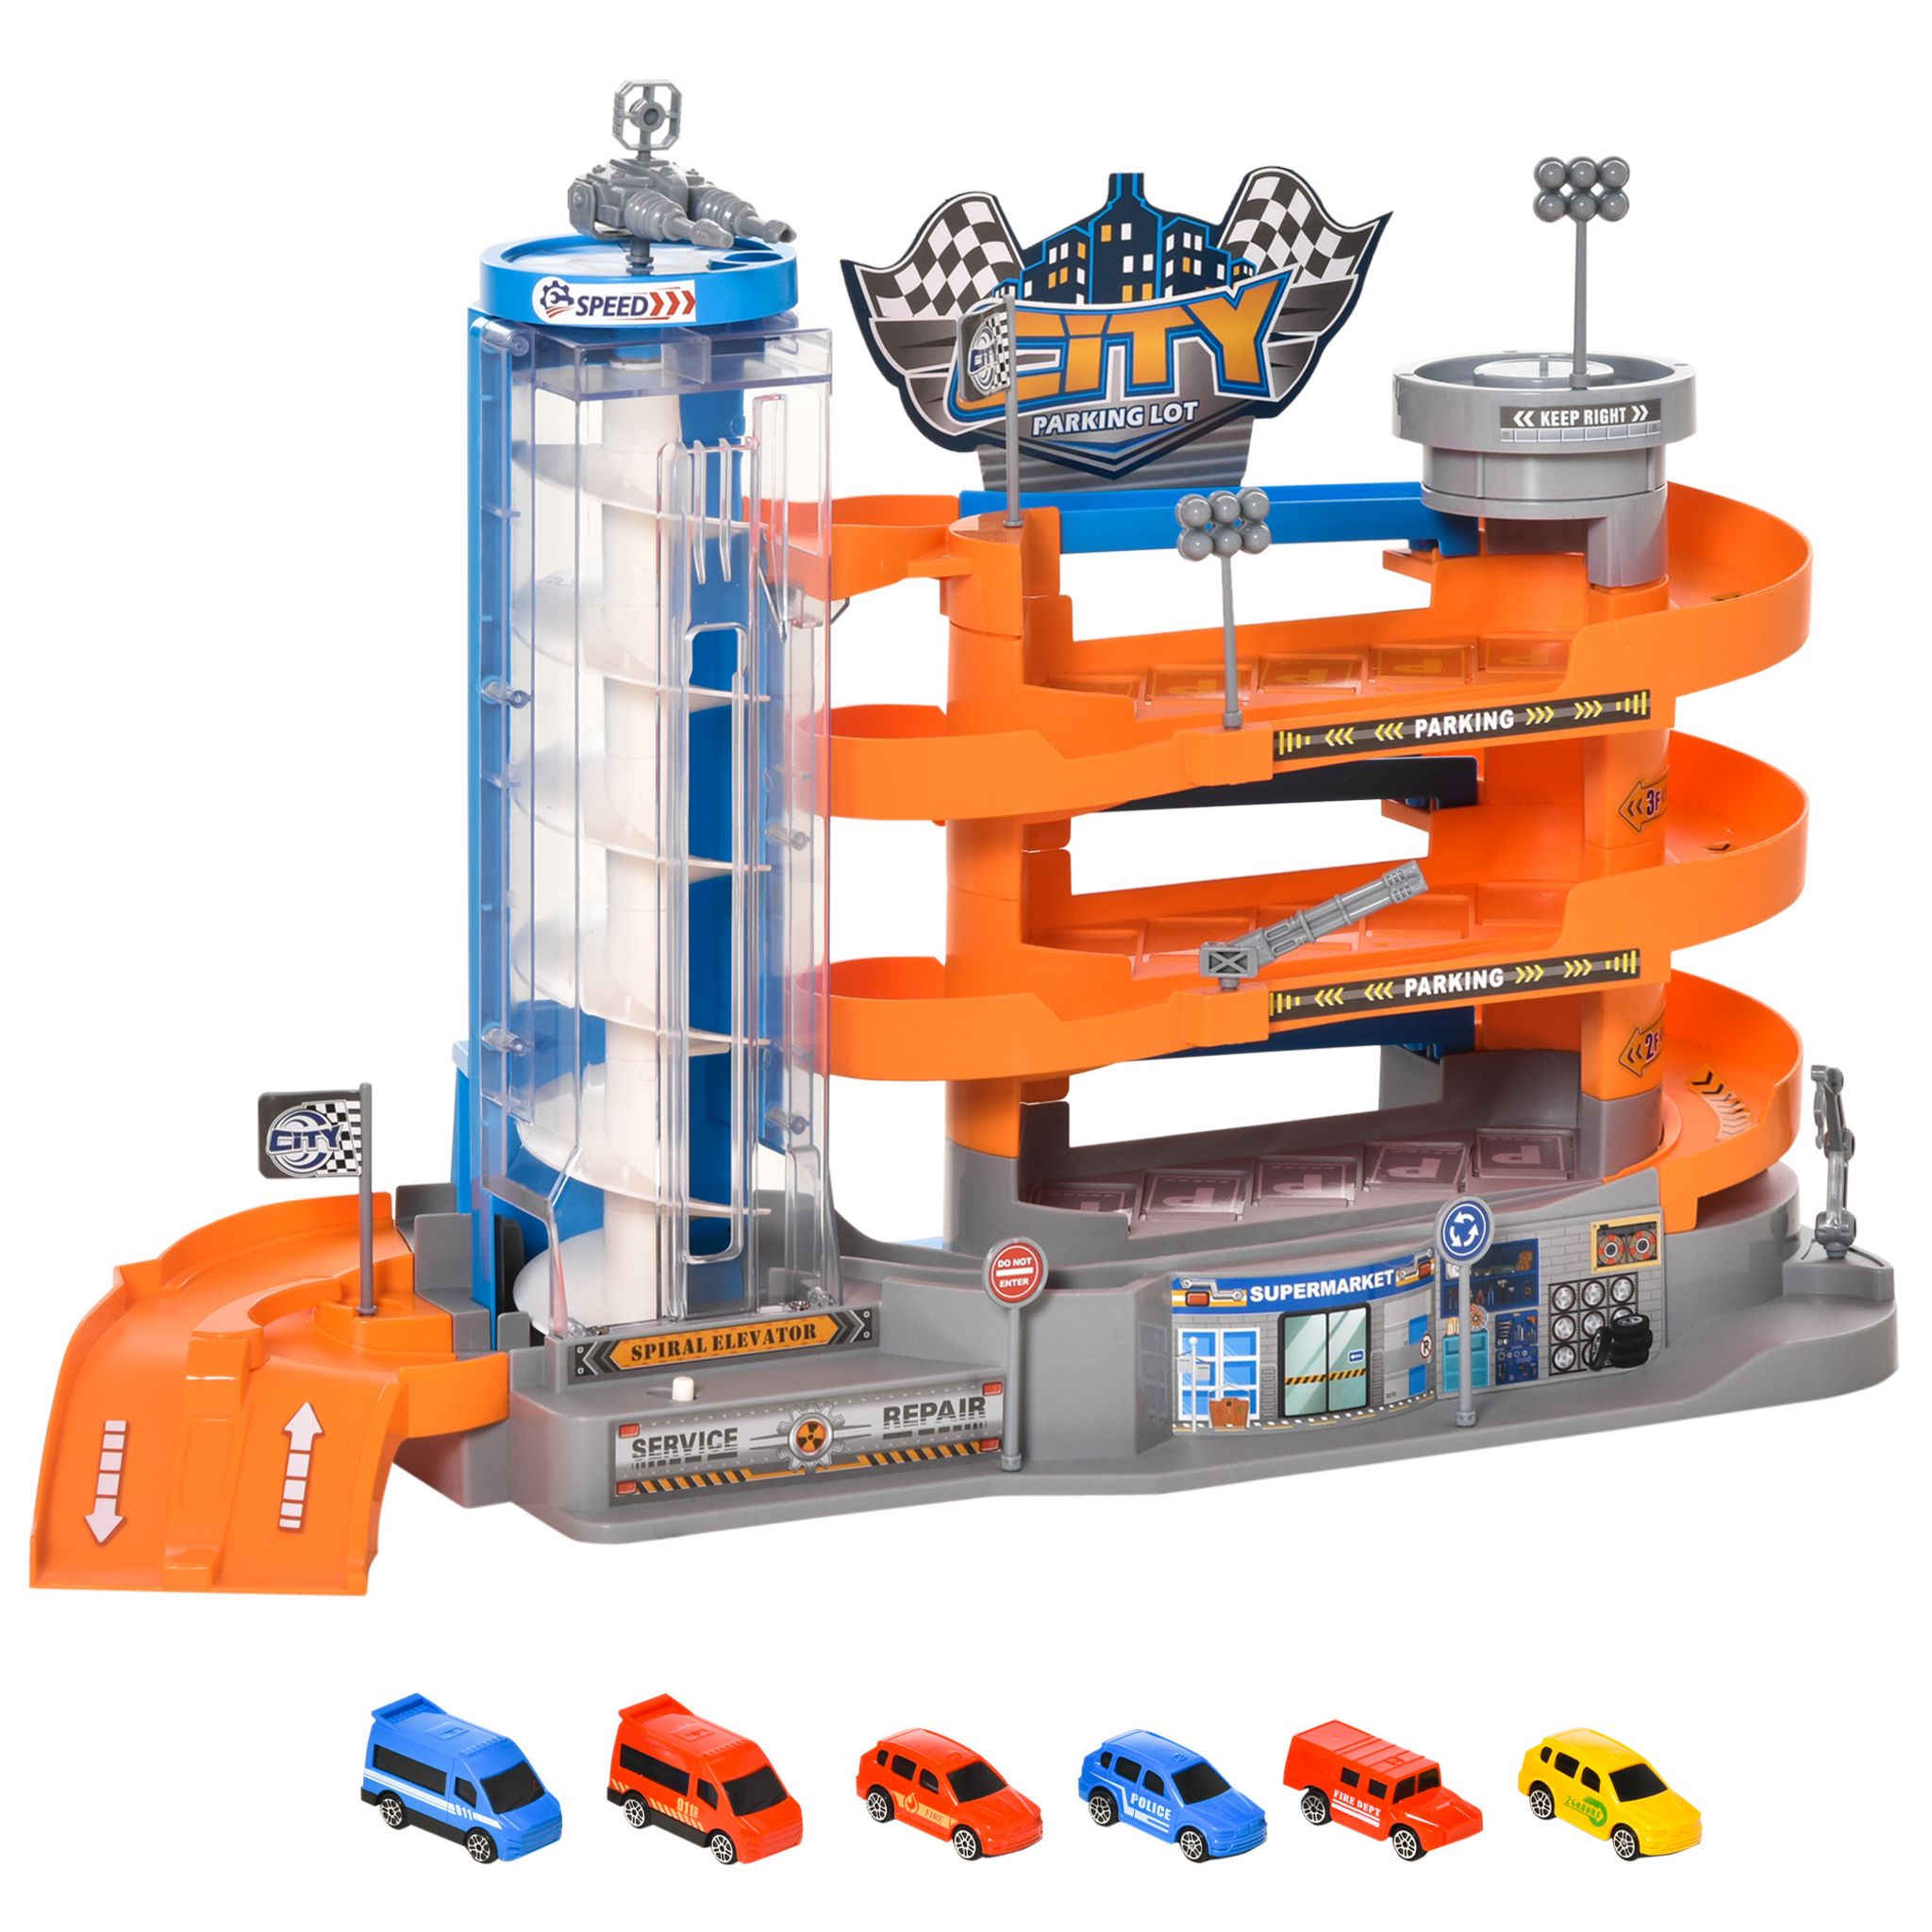 HOMCOM Garage parking voitures enfant - 5 niveaux, 4 voitures, 1  hélicoptère - ascenseur manuel, station-service, pont élévateur - PP ABS  bleu rouge jaune pas cher 